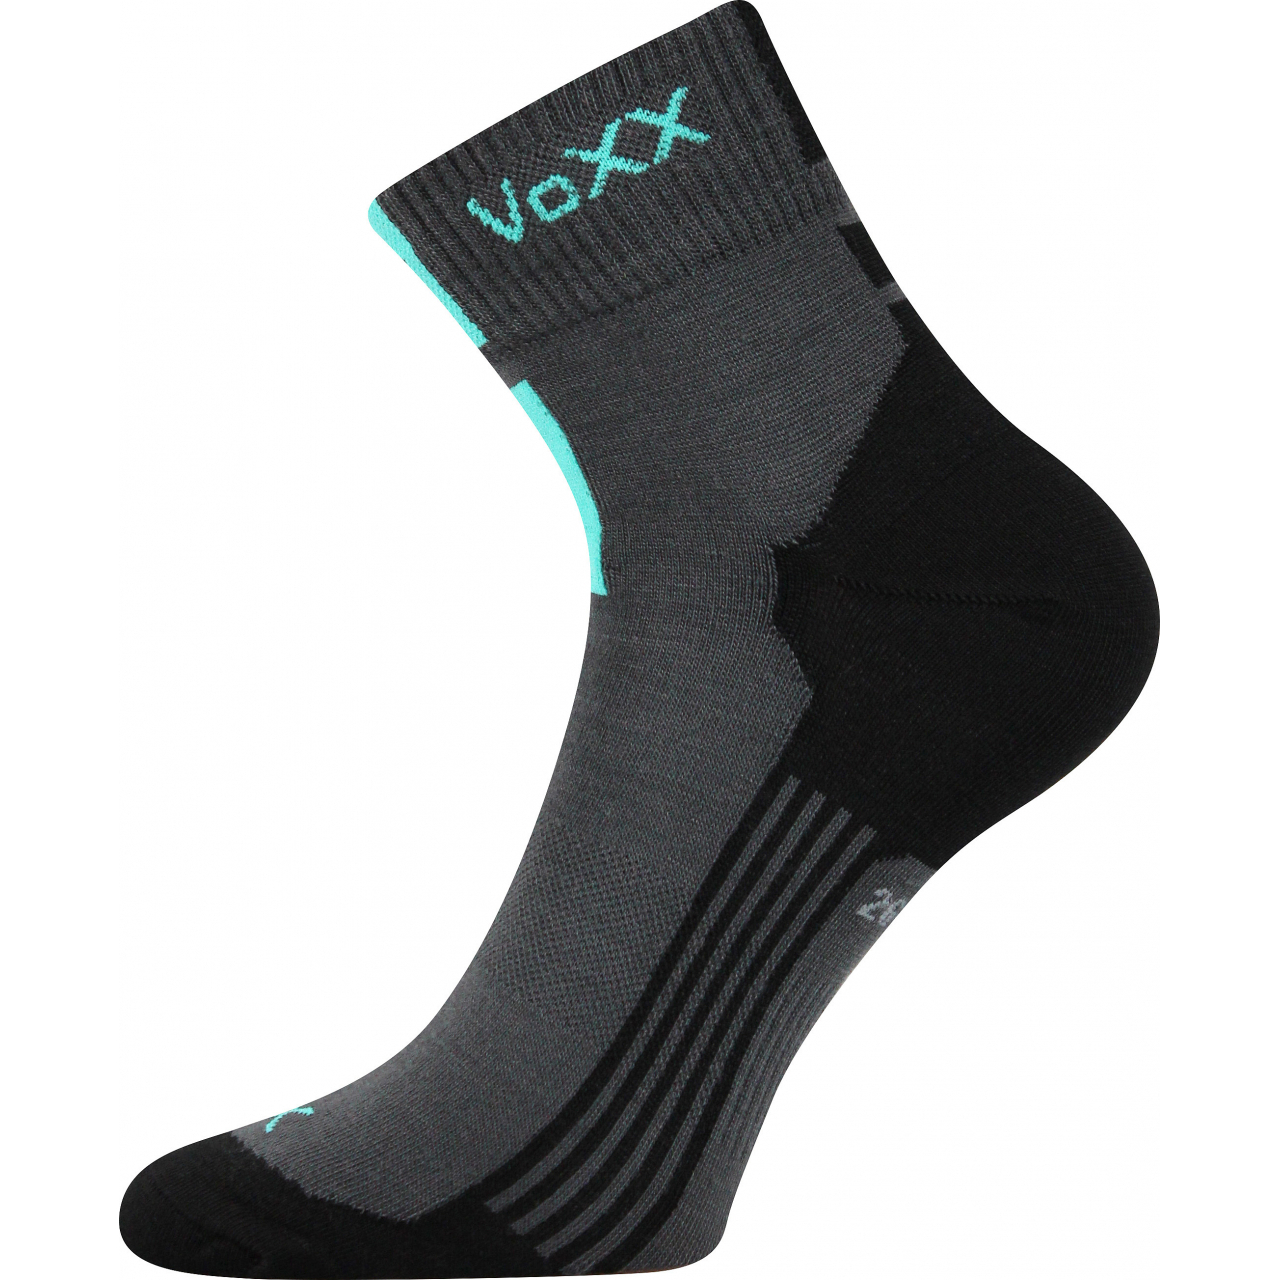 Ponožky unisex klasické Voxx Mostan silproX - tmavě šedé, 43-46